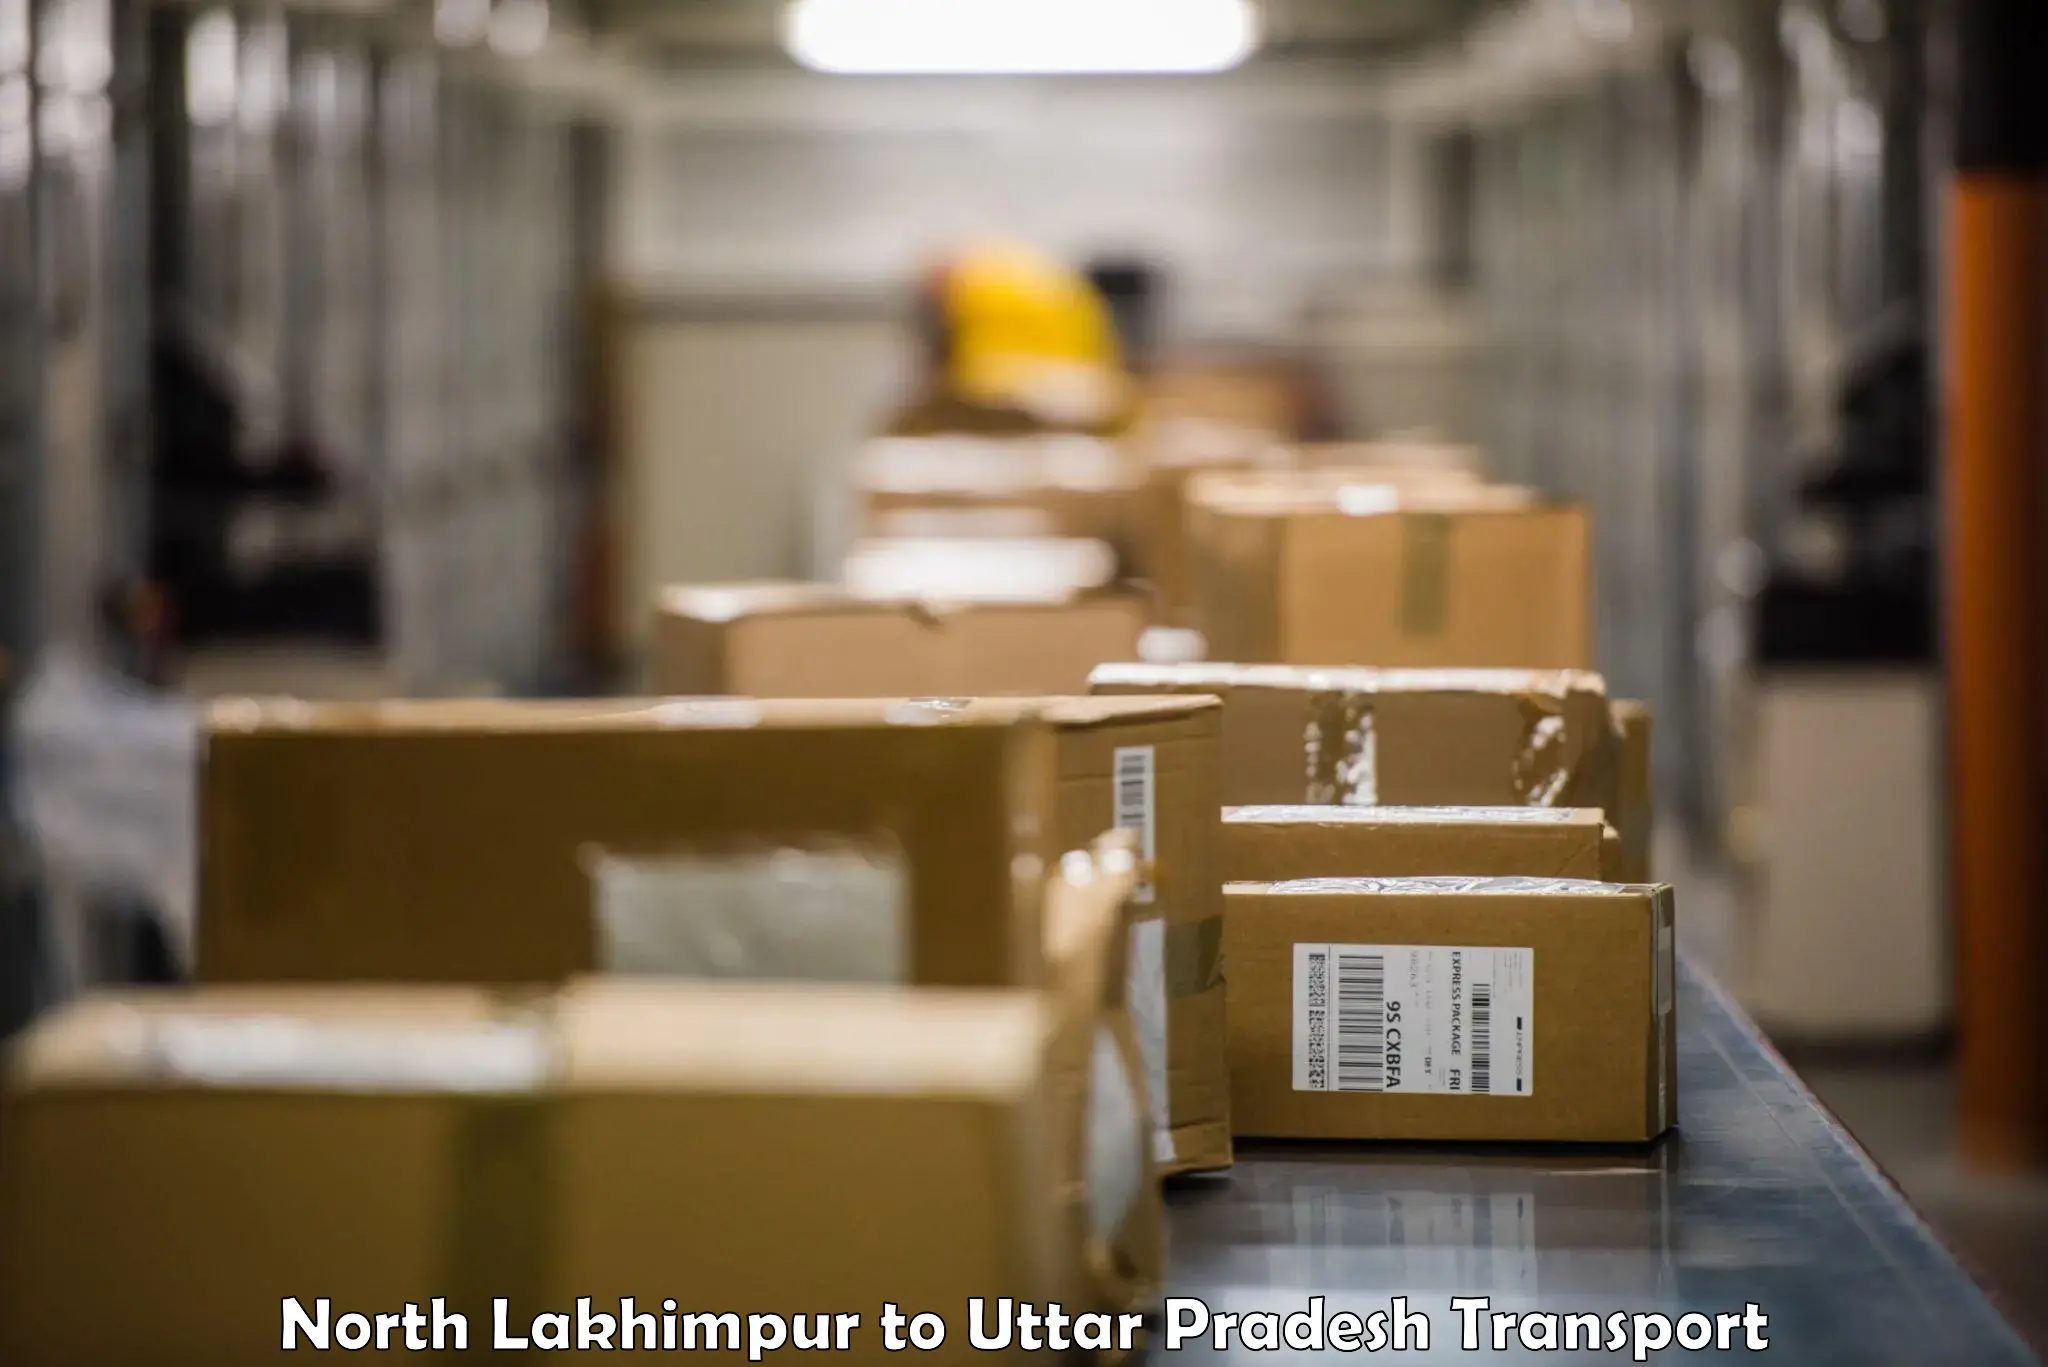 Two wheeler parcel service North Lakhimpur to Haidargarh